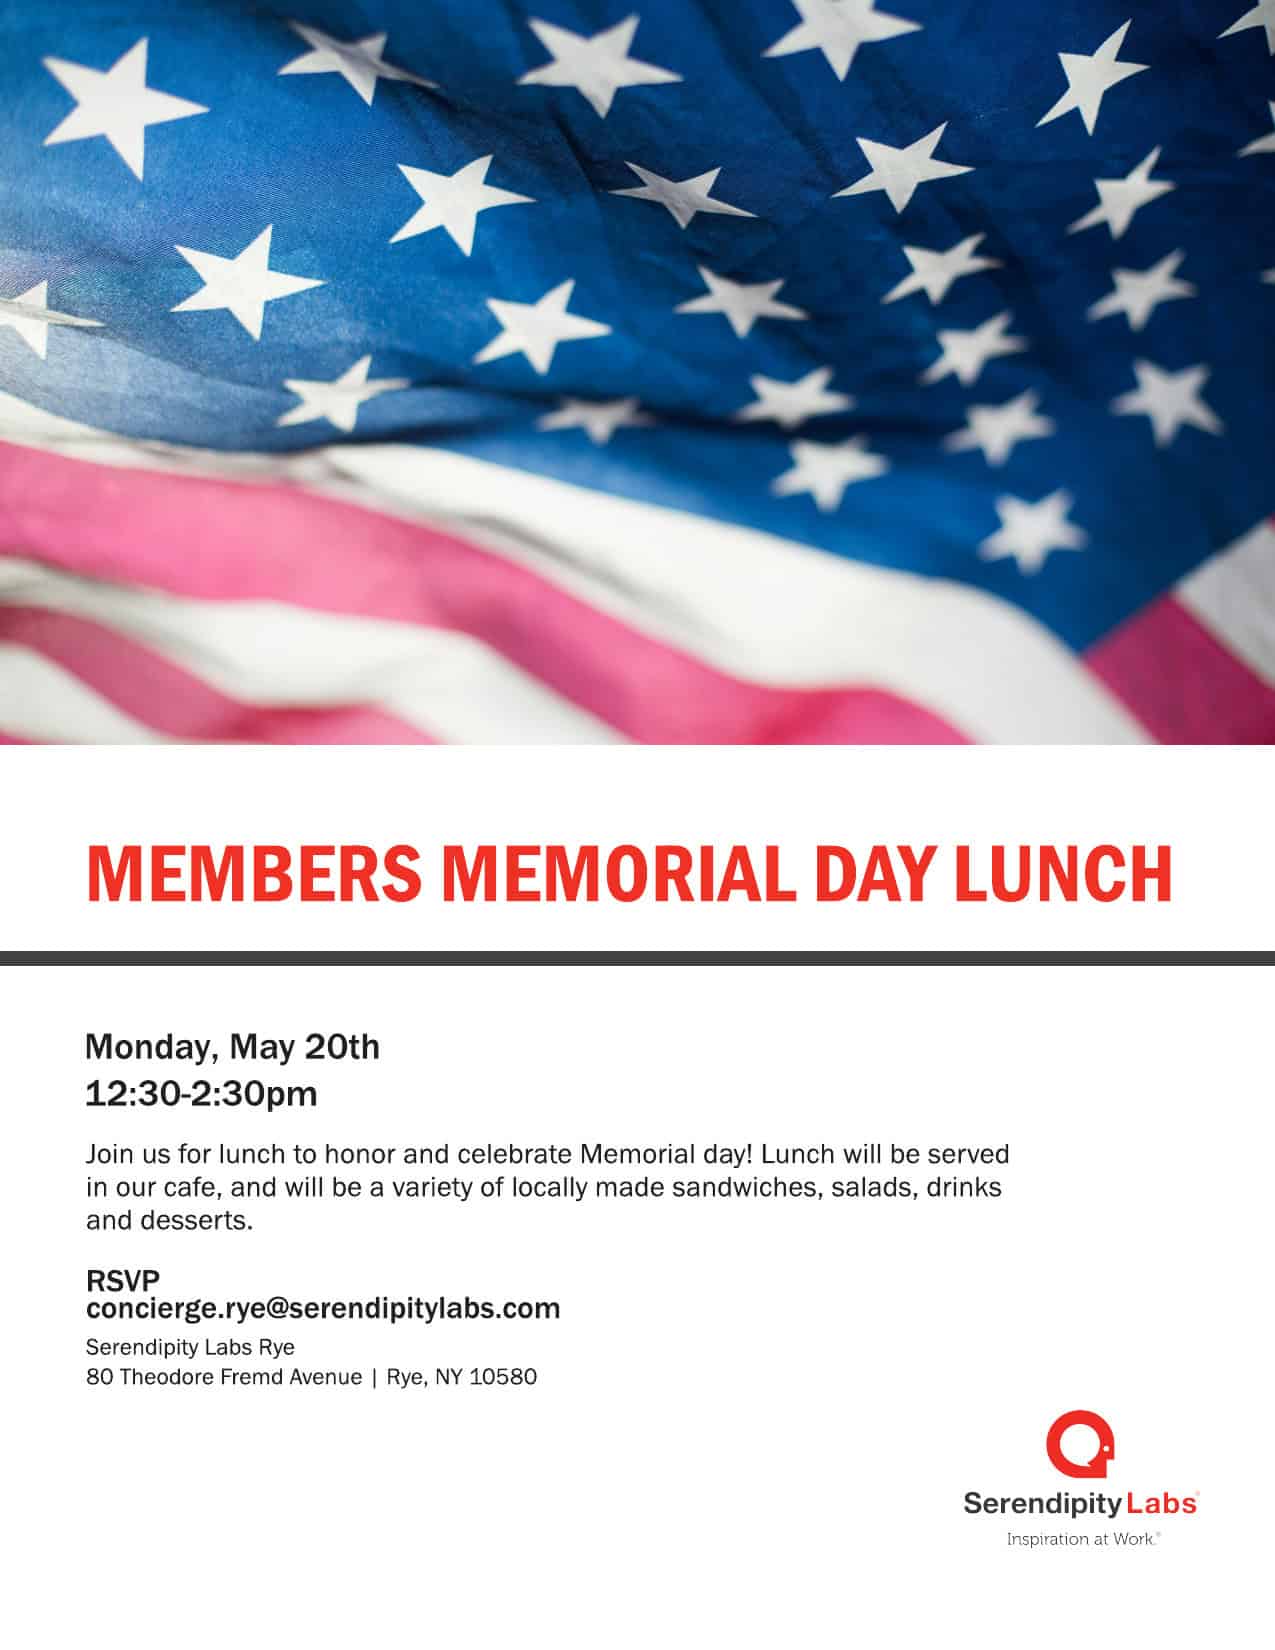 Members Memorial Day Lunch